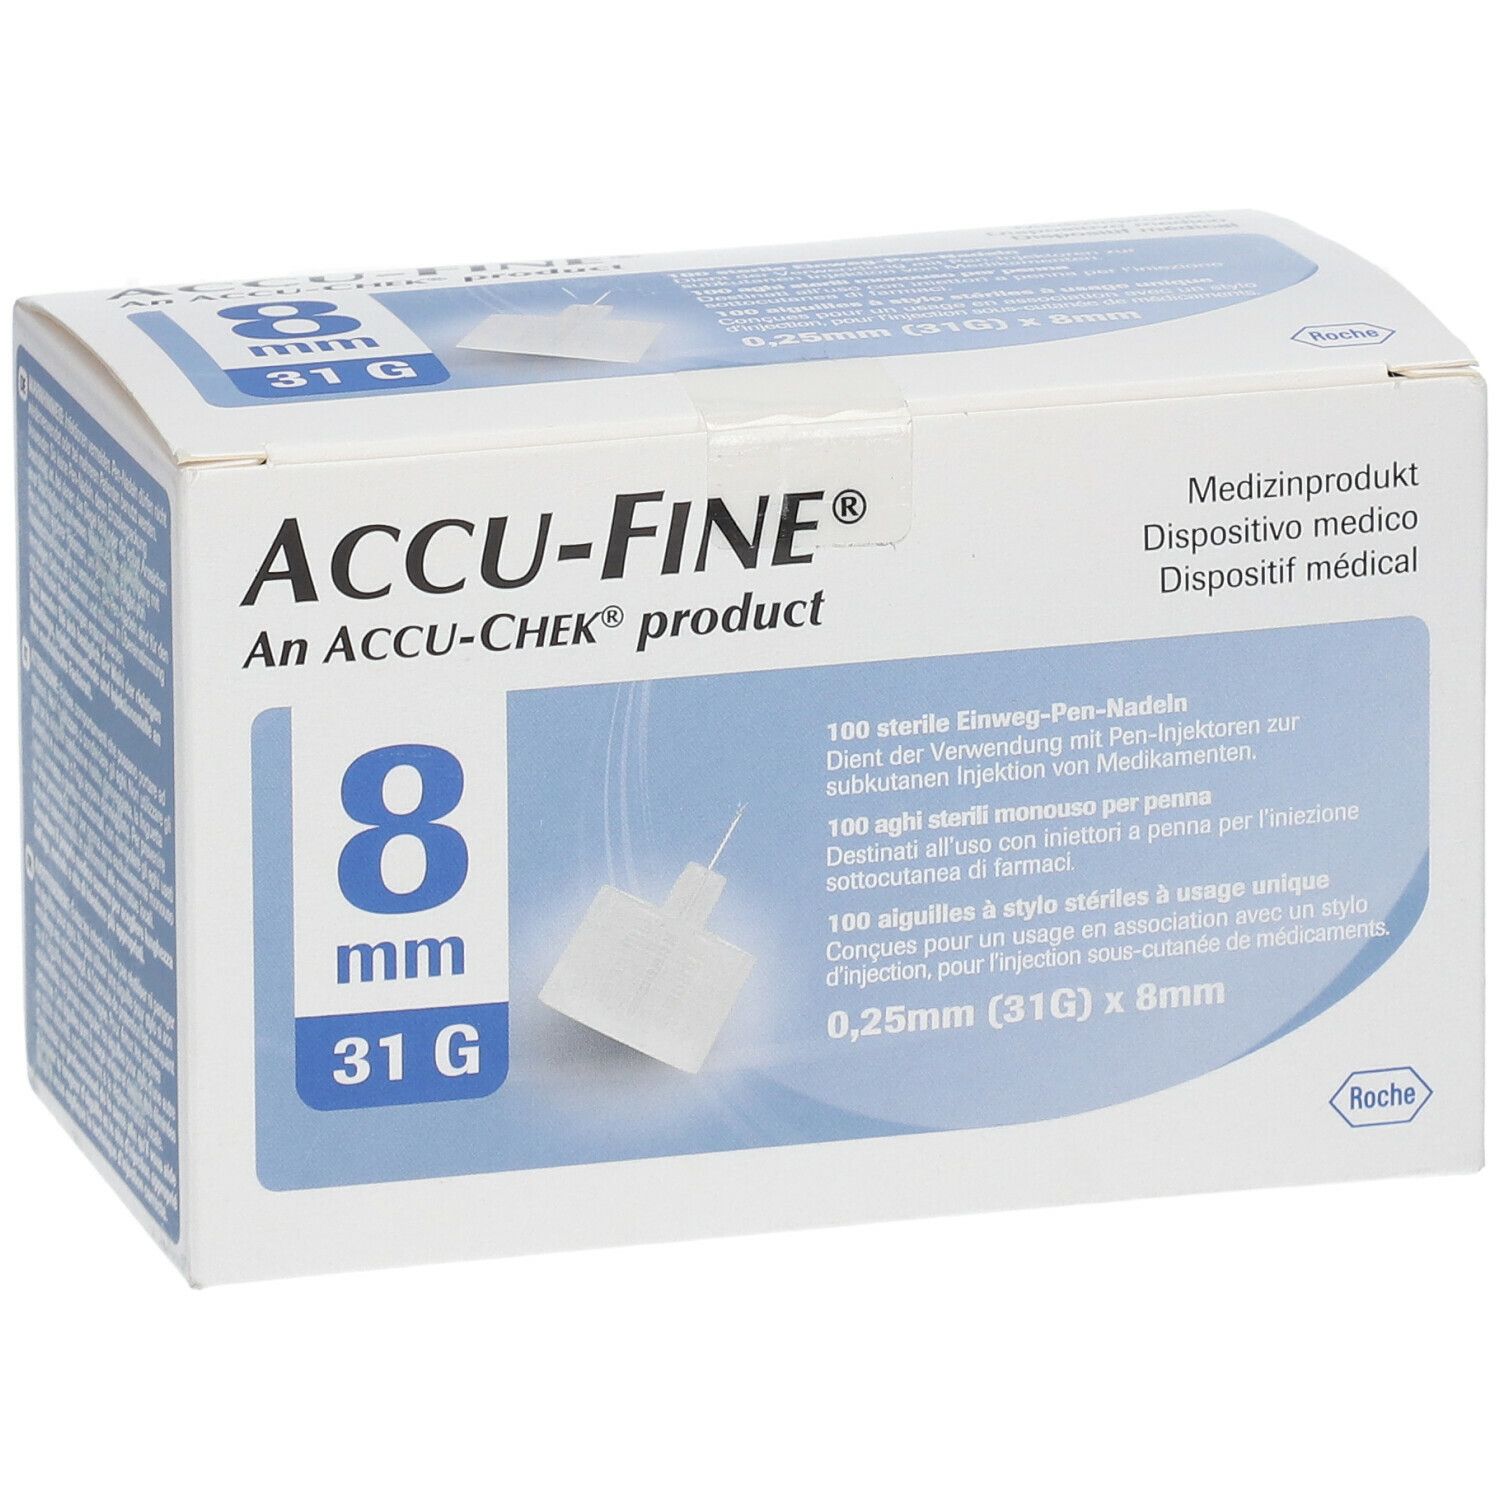 ACCU-FINE 0,25 mm (31G) x 8 mm